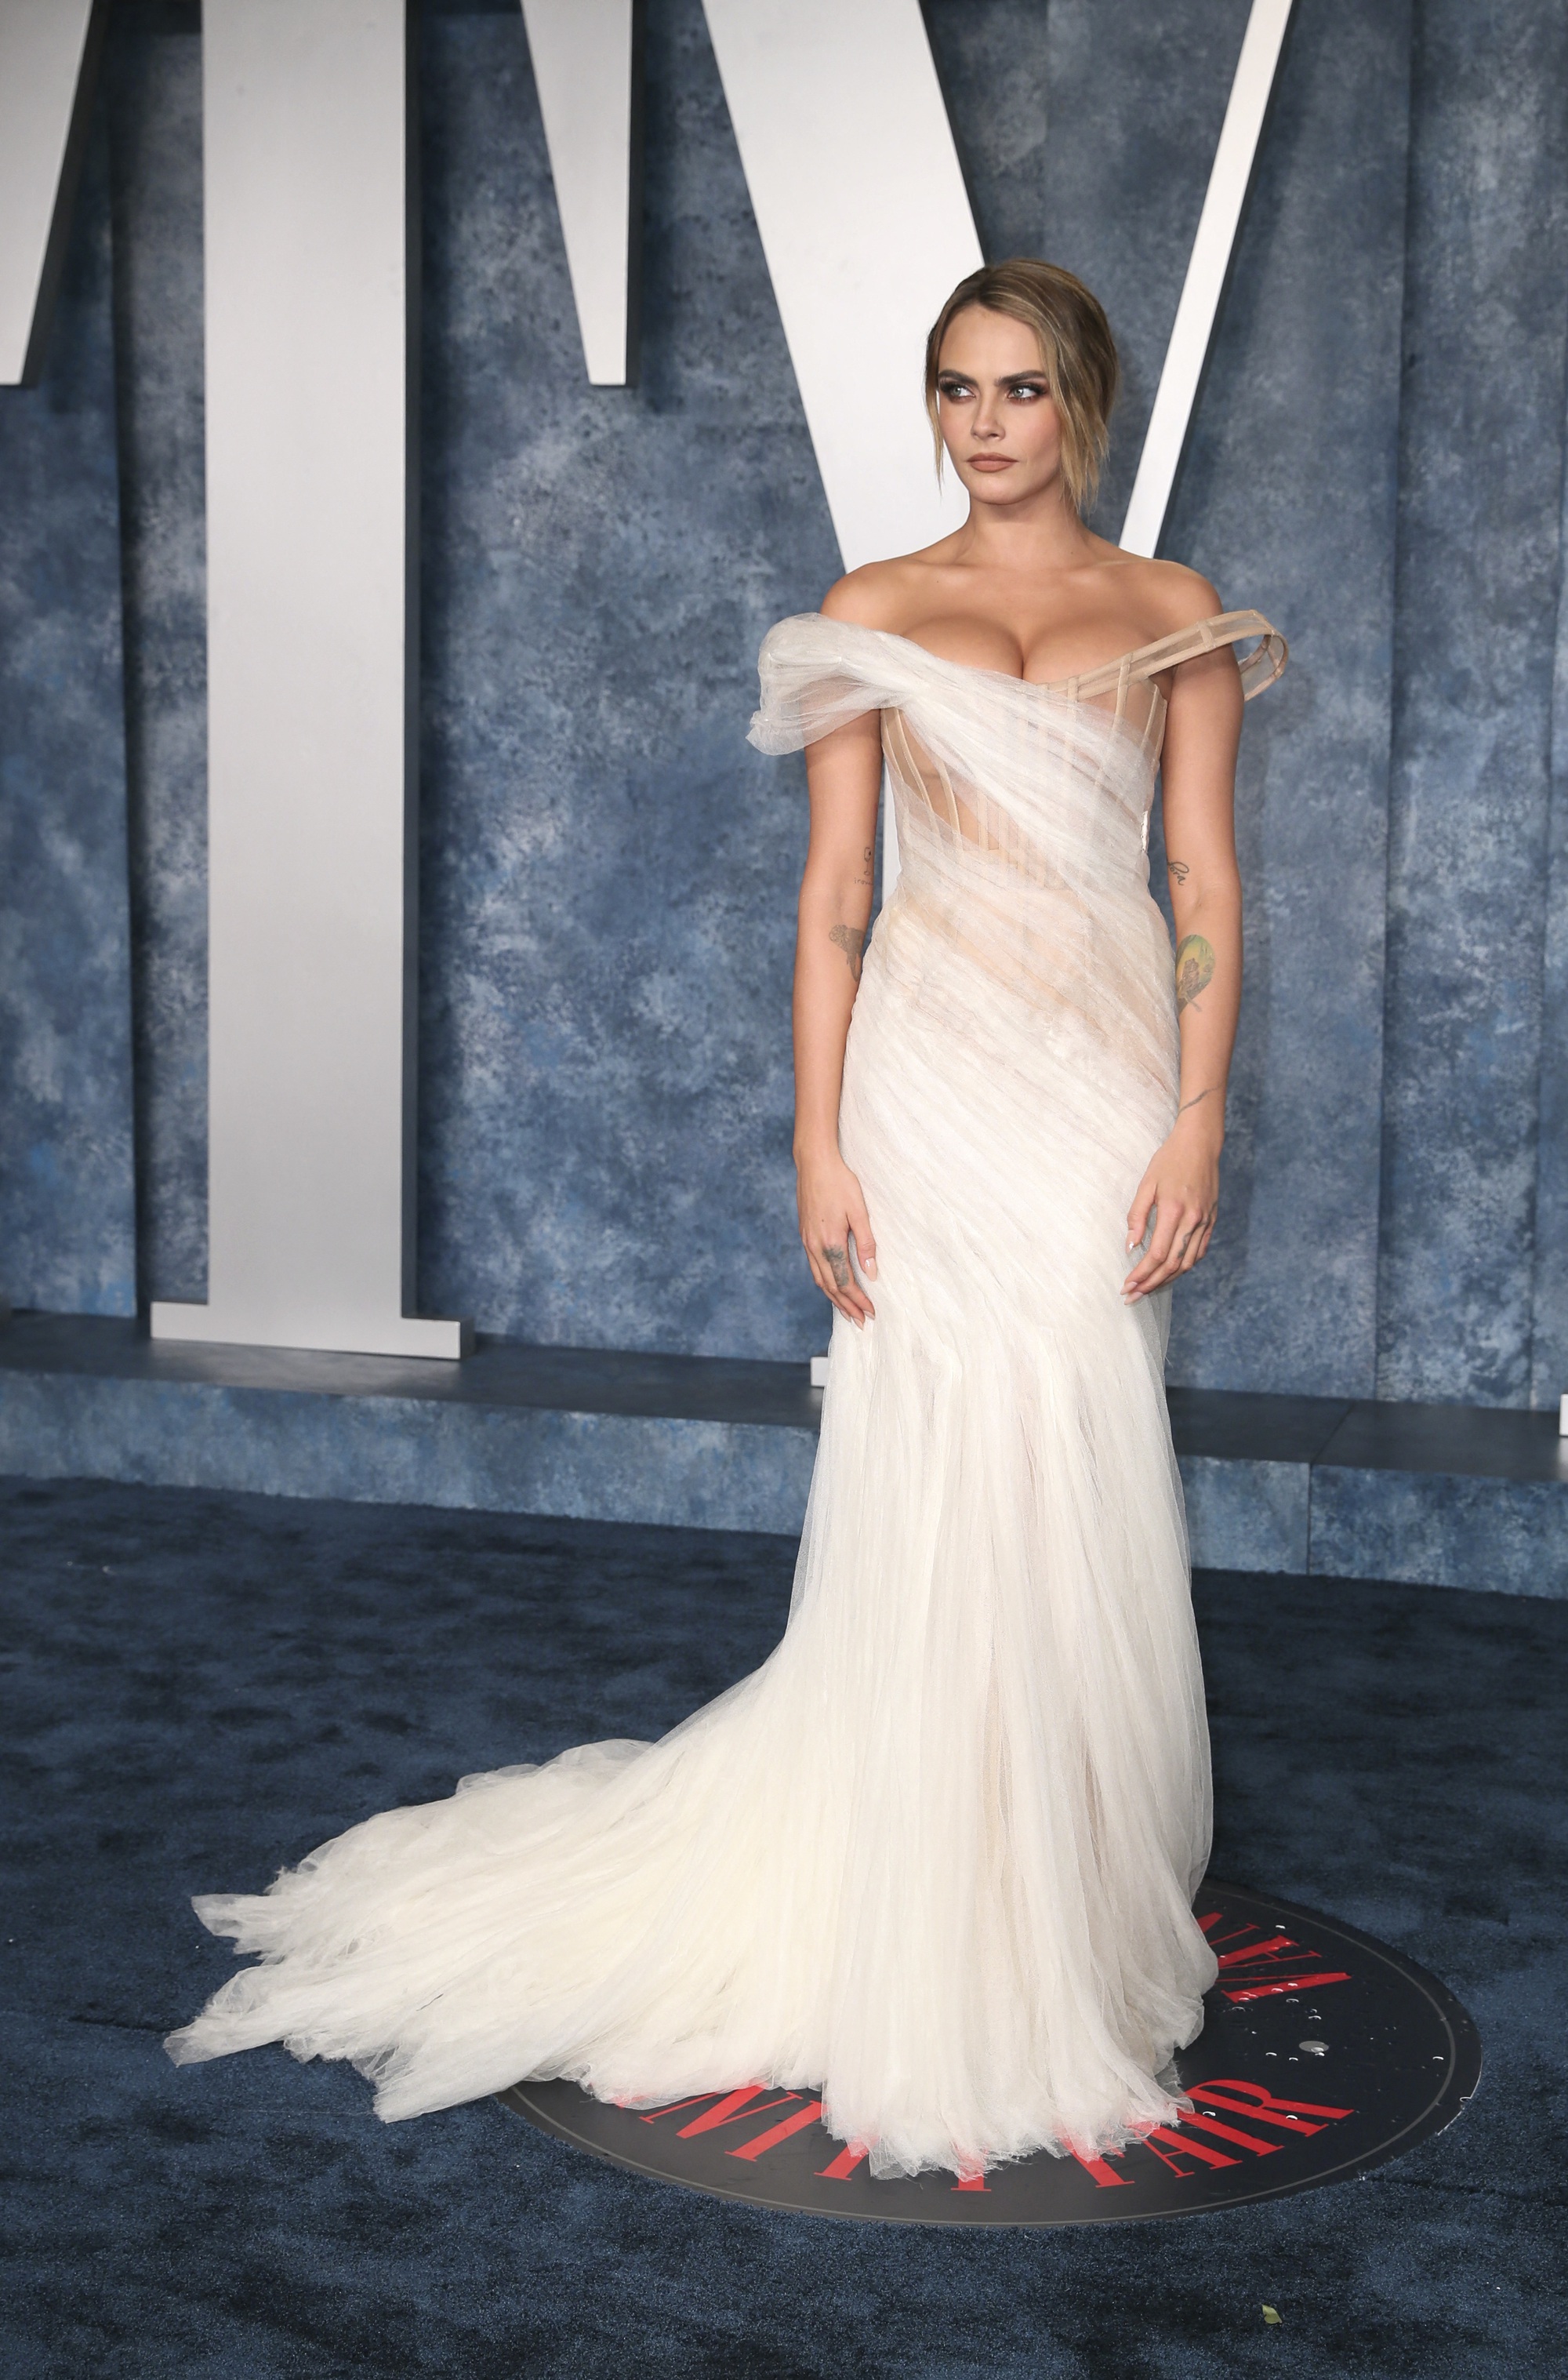 Loạt ảnh người đẹp “mặc như không” ở tiệc hậu Oscar - Ảnh 10.